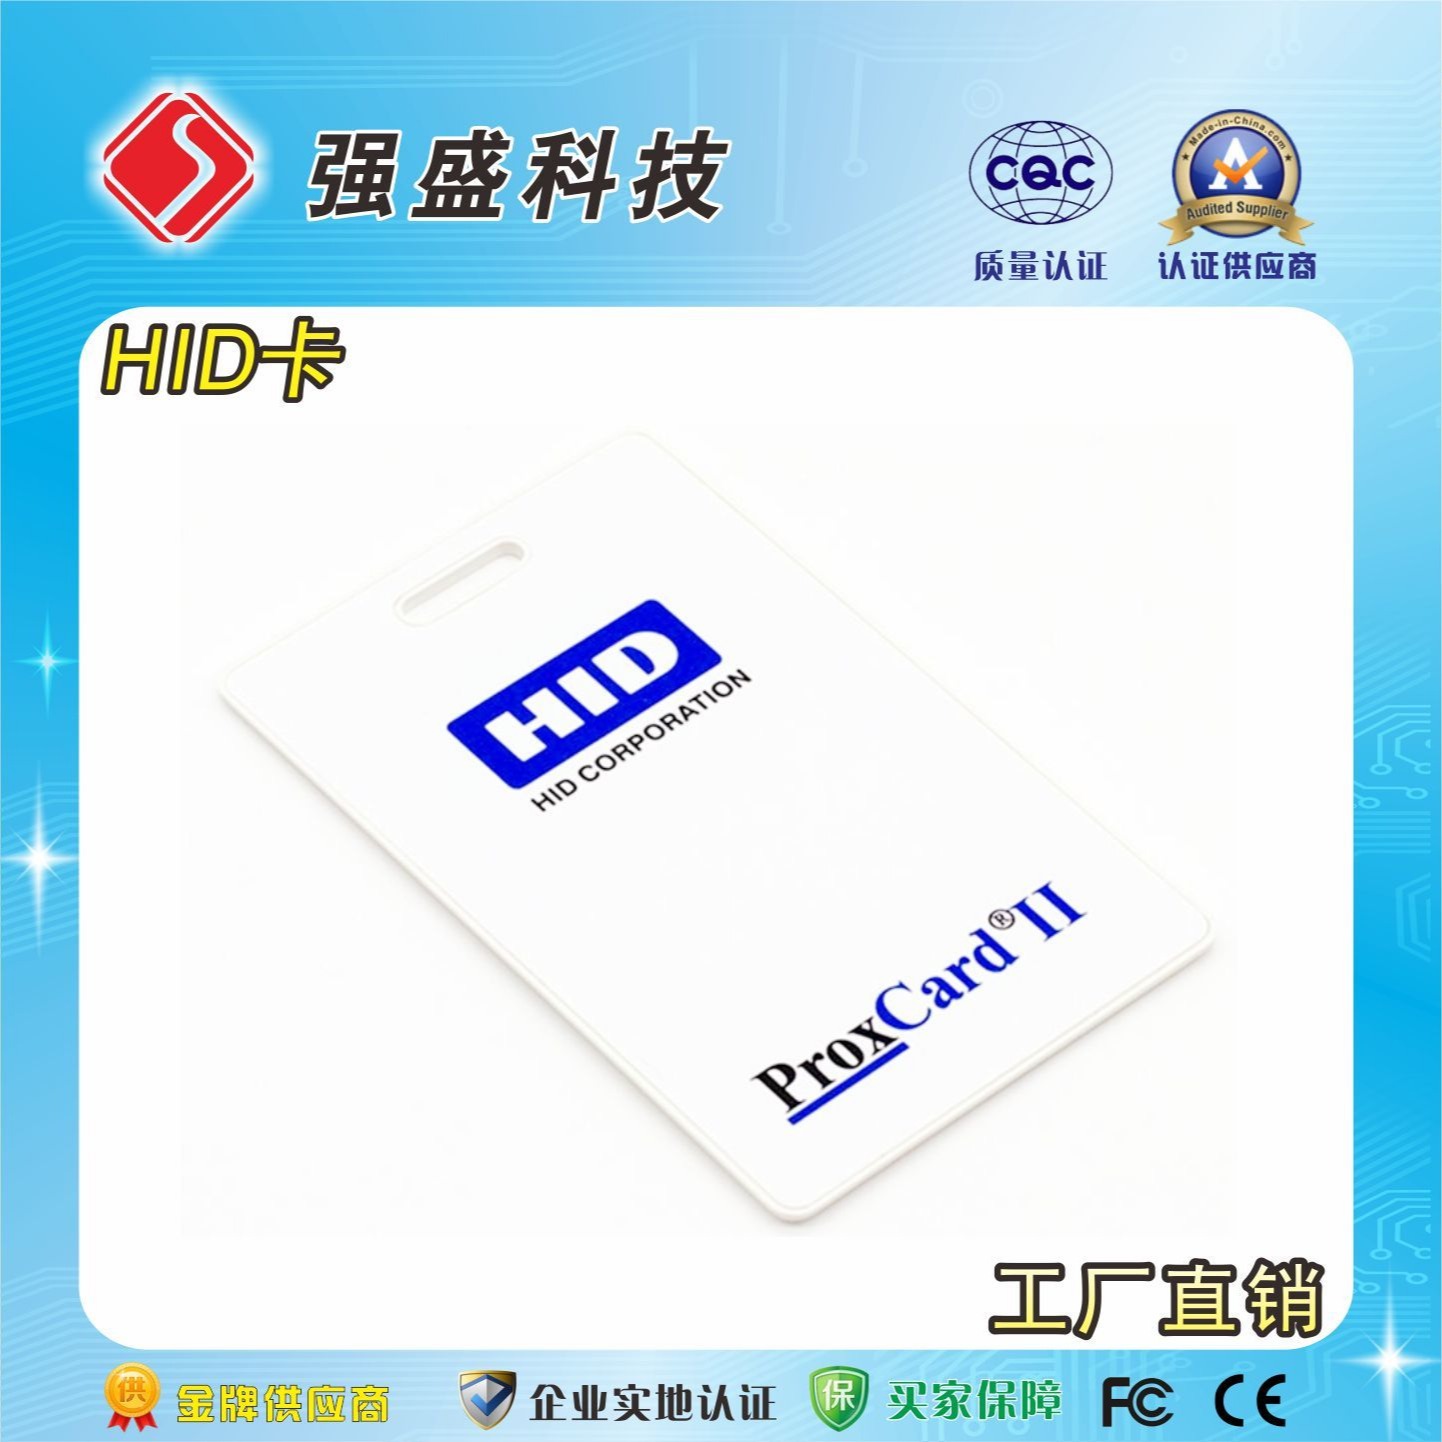 广州定制HID卡 原装HID厚卡 13.56MHz HID智能卡图片